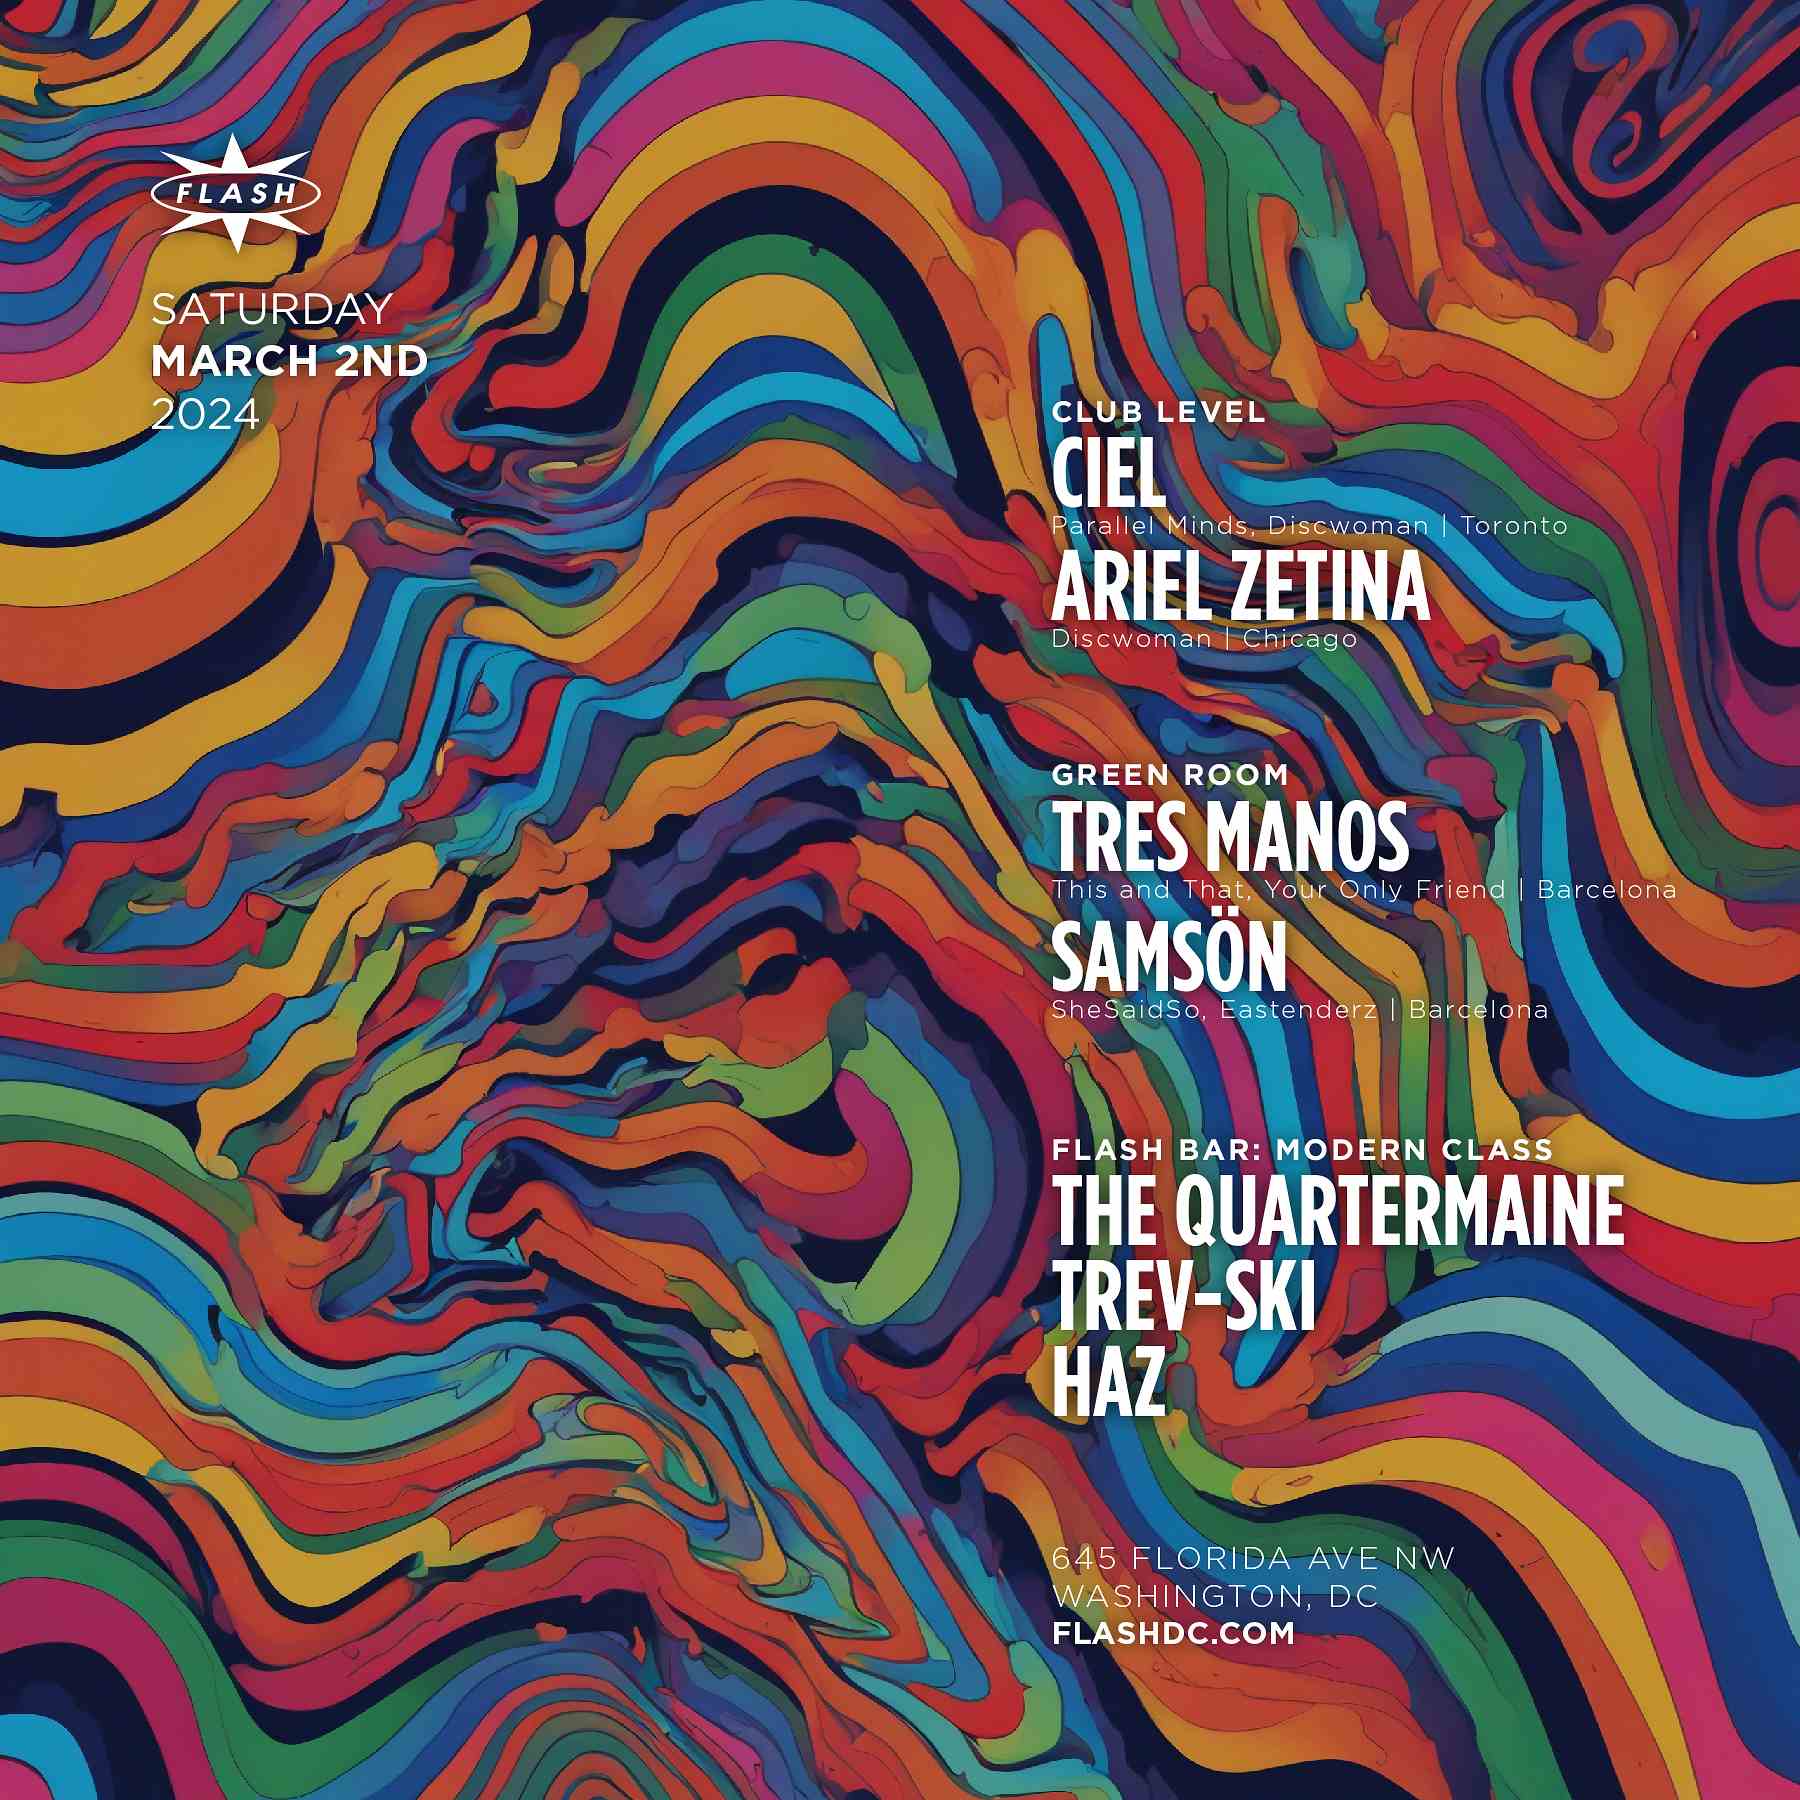 Ciel - Ariel Zetina event flyer